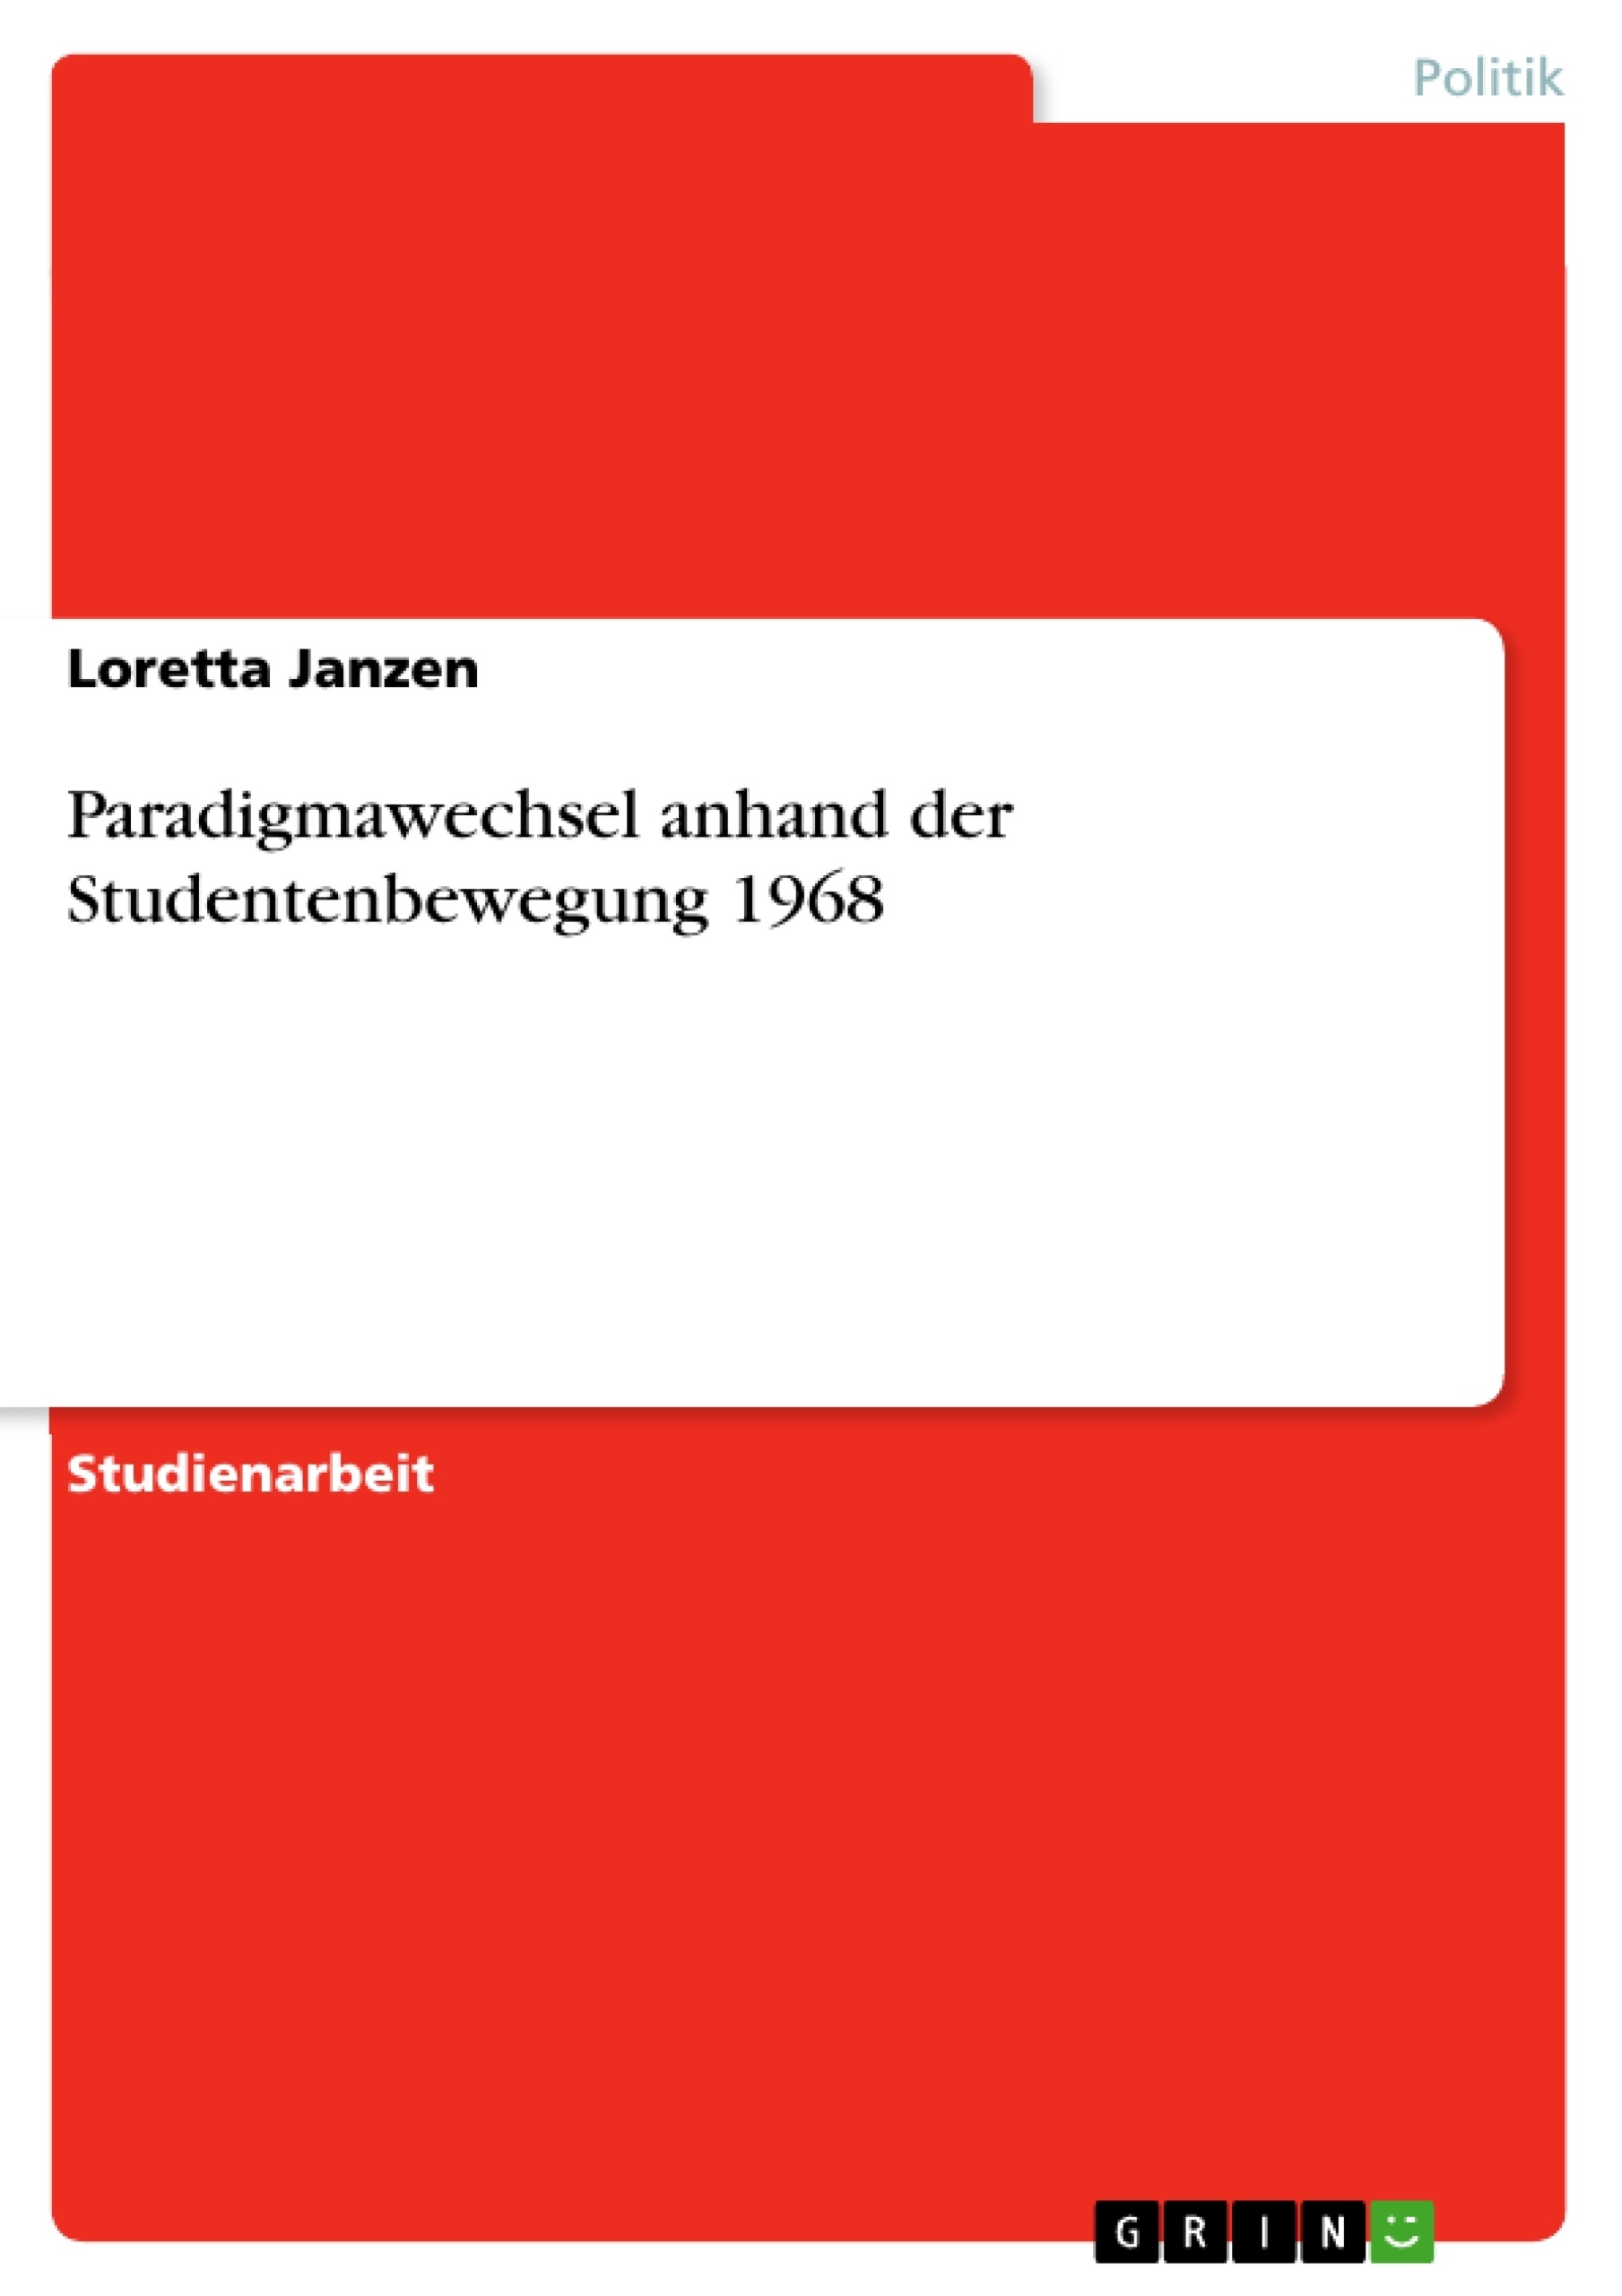 Título: Paradigmawechsel anhand der Studentenbewegung 1968